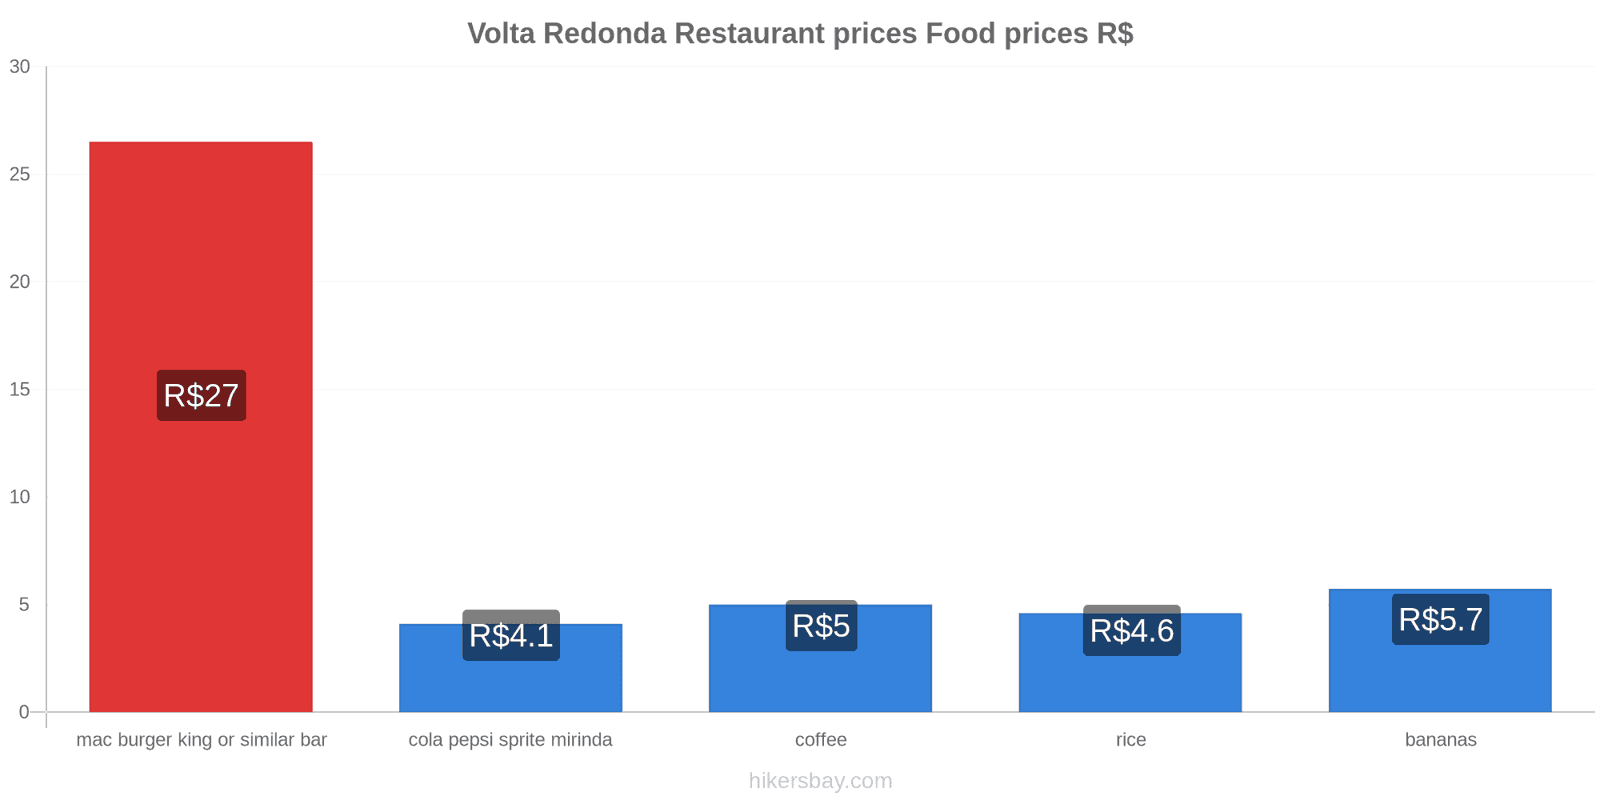 Volta Redonda price changes hikersbay.com